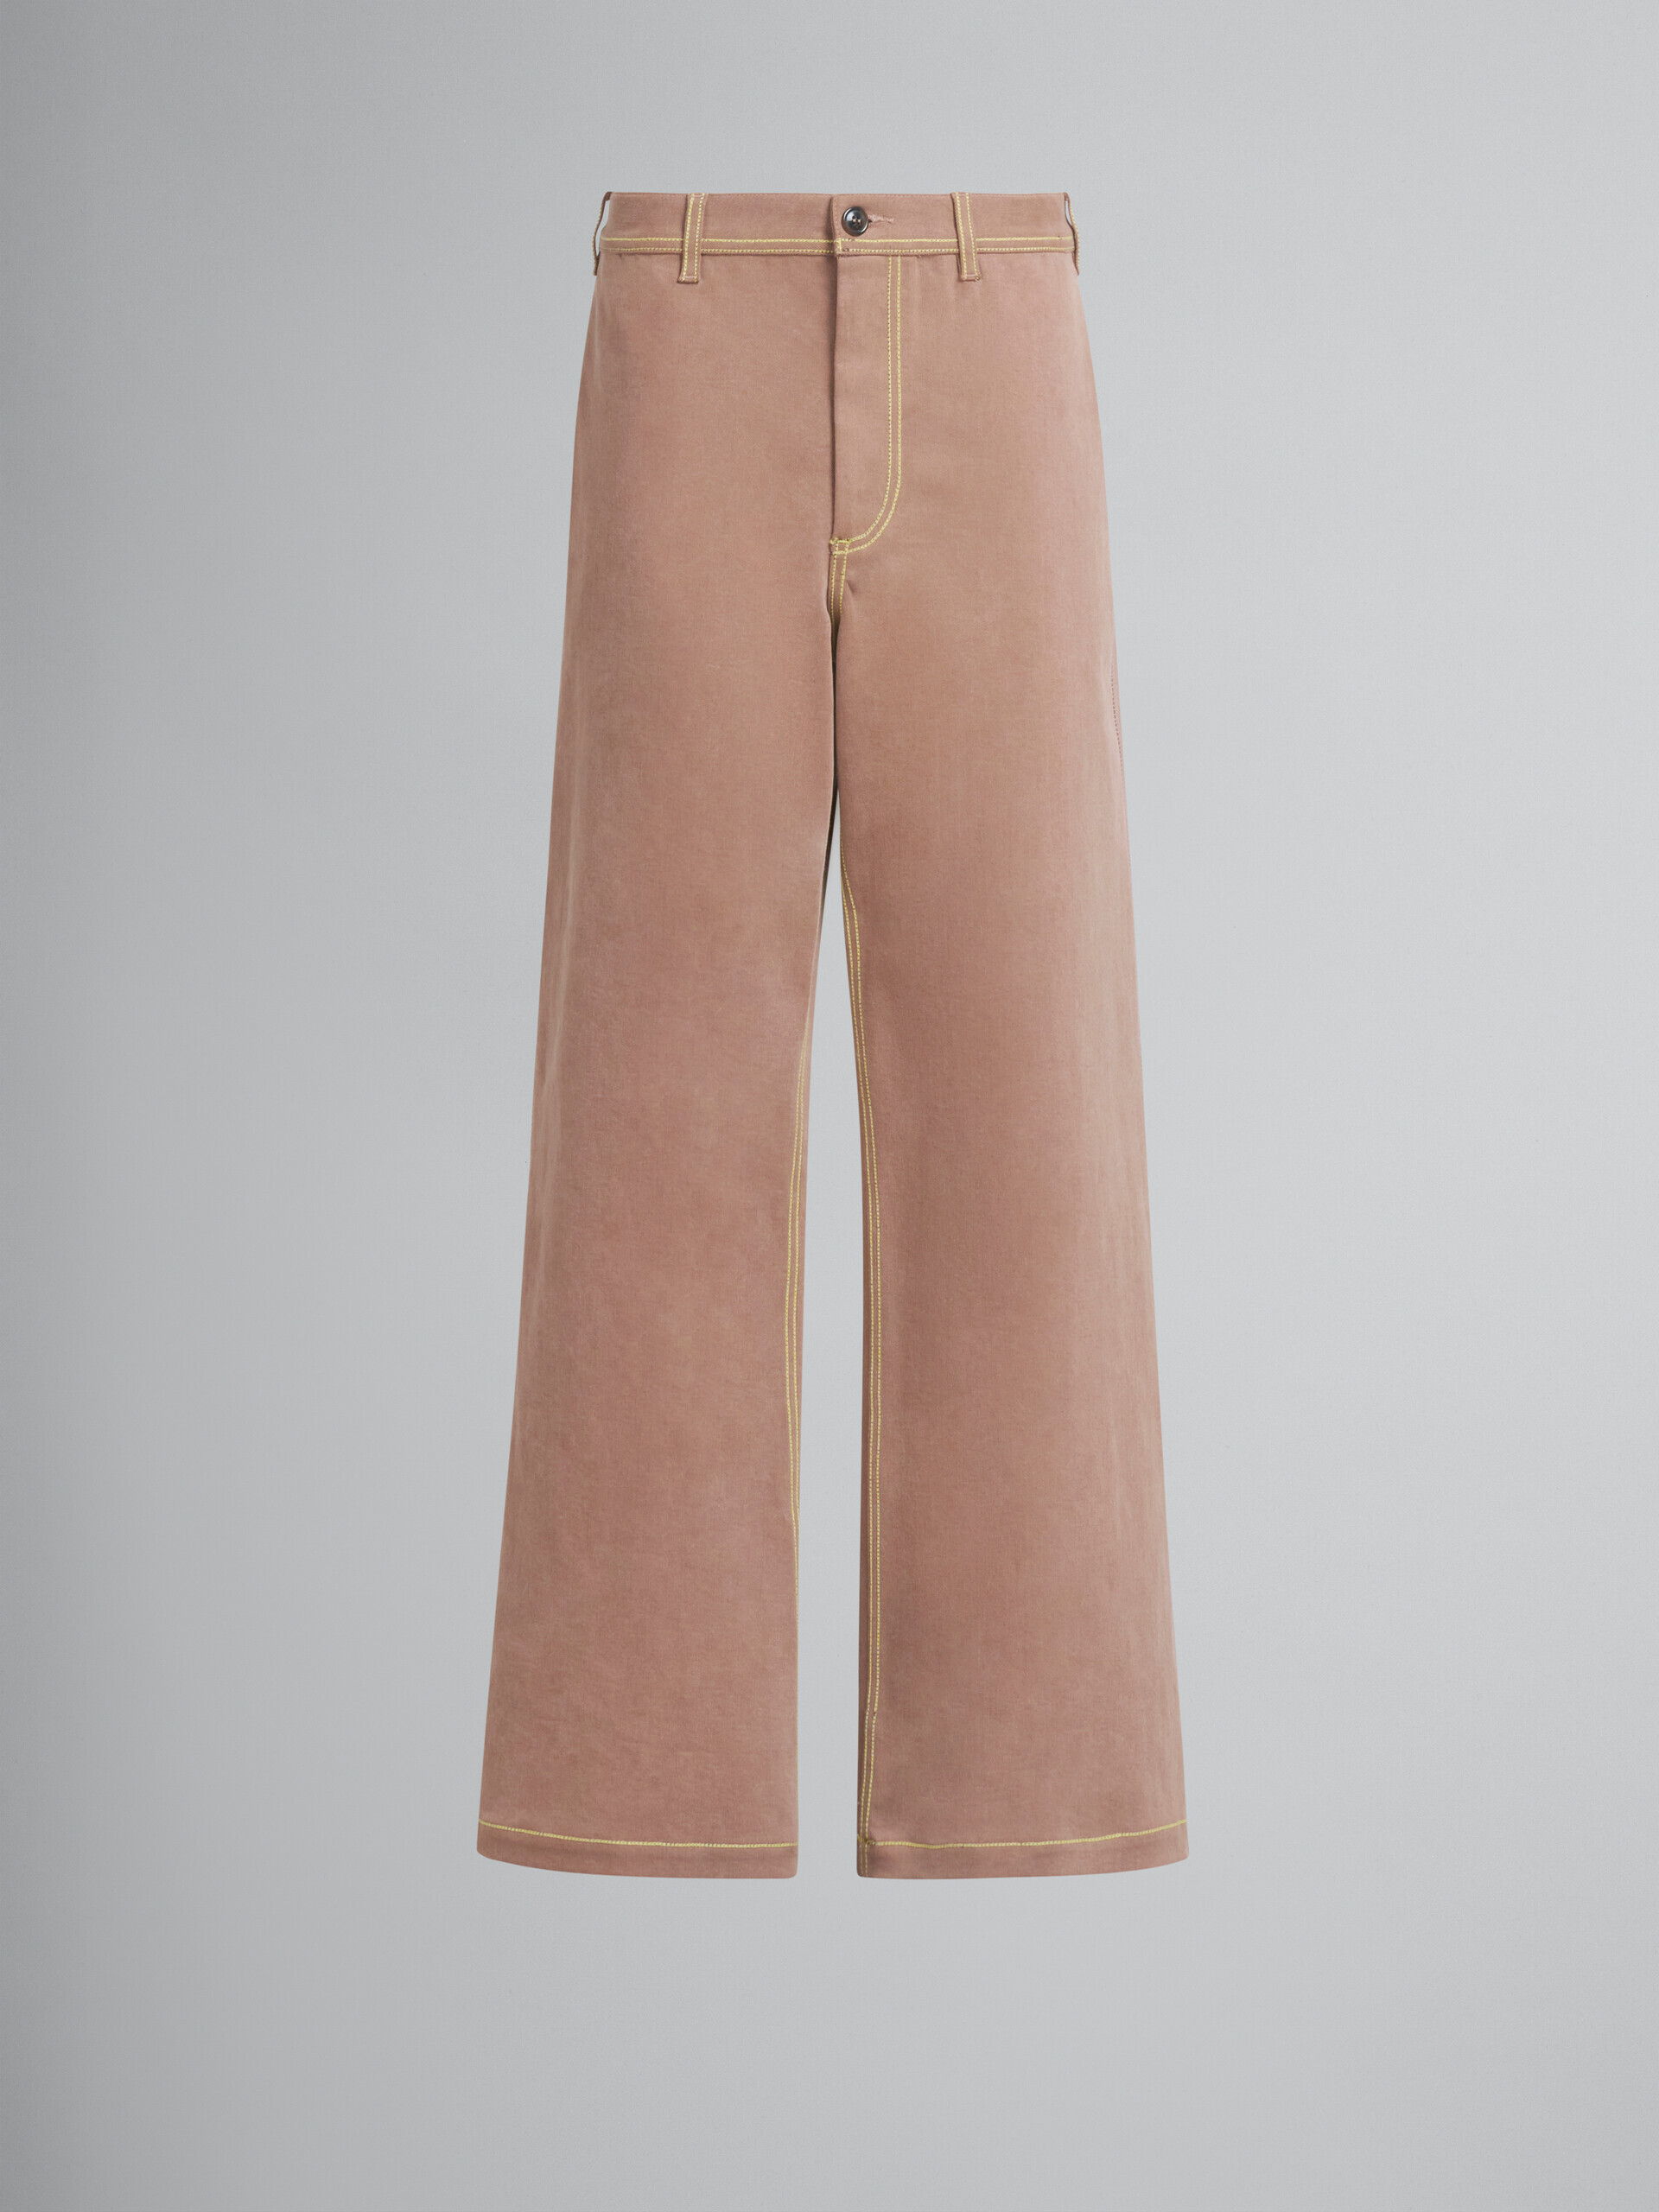 Pantaloni in denim biologico marrone con cuciture a contrasto - Pantaloni - Image 2